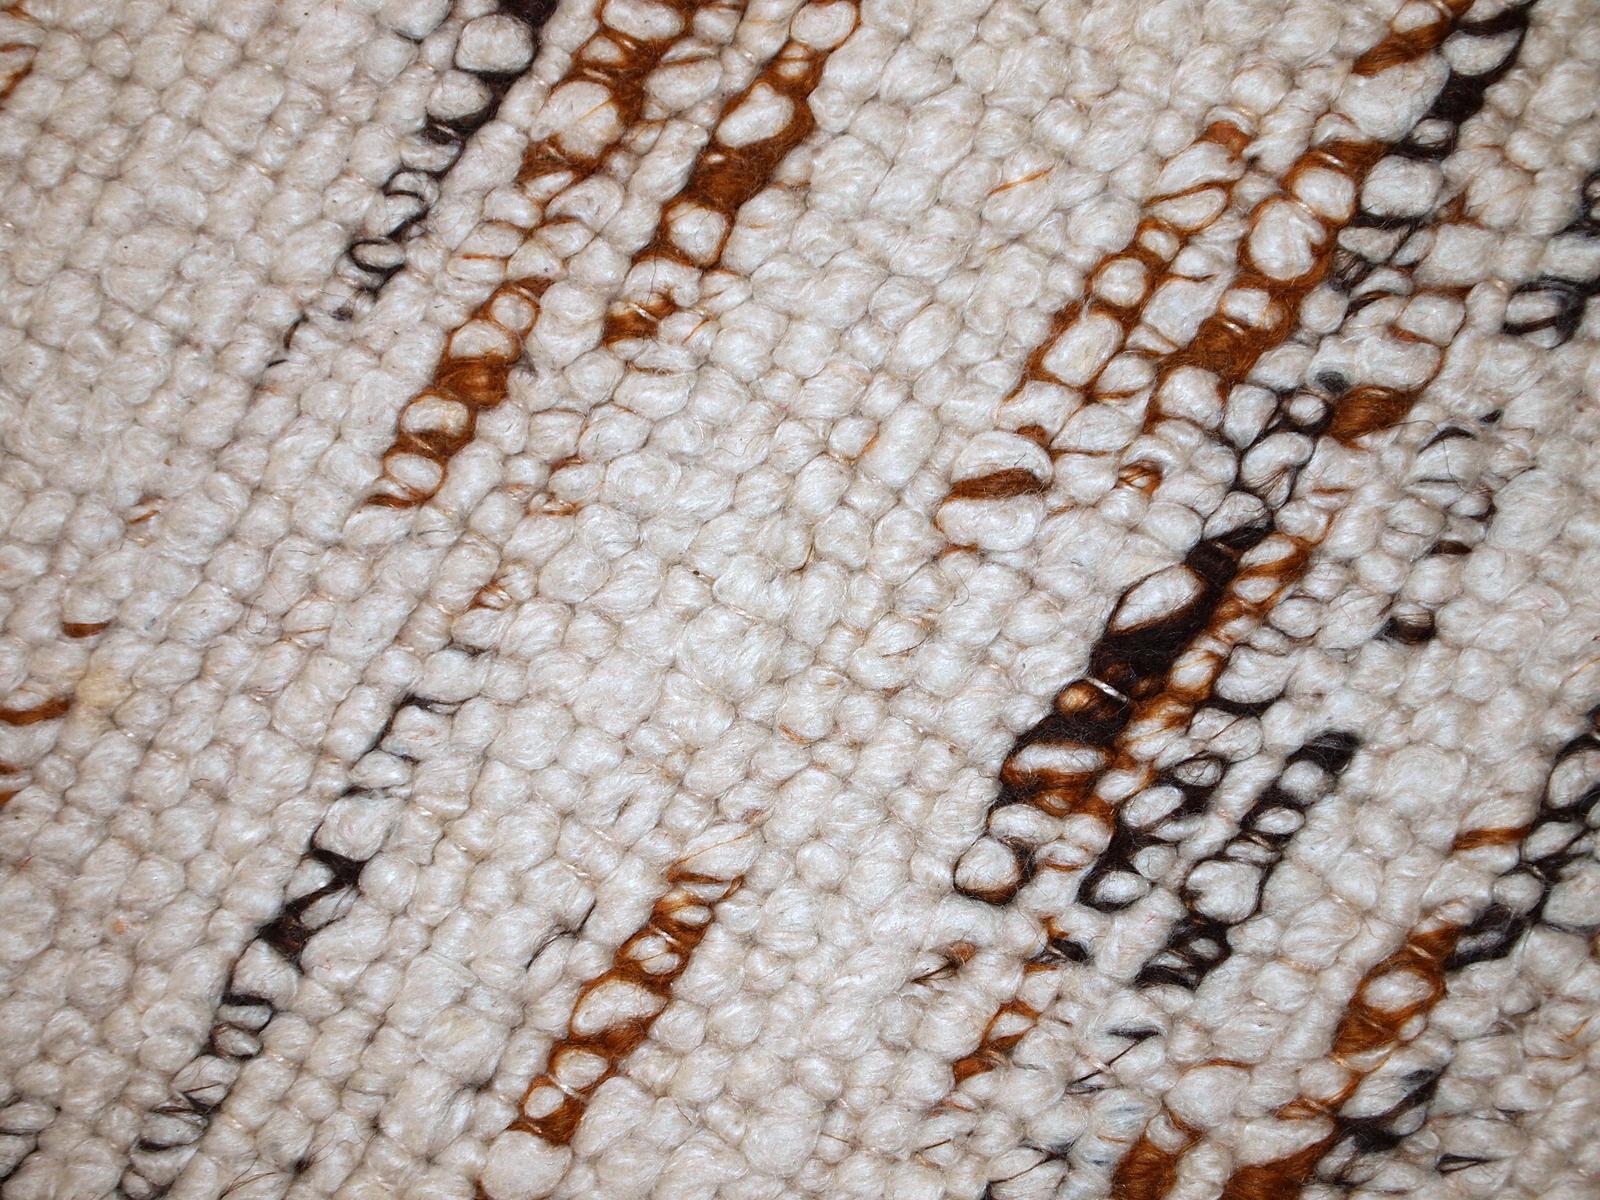 Handmade vintage Indian beige runner in wool. It is very soft. The rug is in original good condition.

- Condition: original good,

- circa: 1980s,

- Size: 2.9' x 12.3' (90cm x 375cm),

- Material: wool,

- Country of origin: India,

-